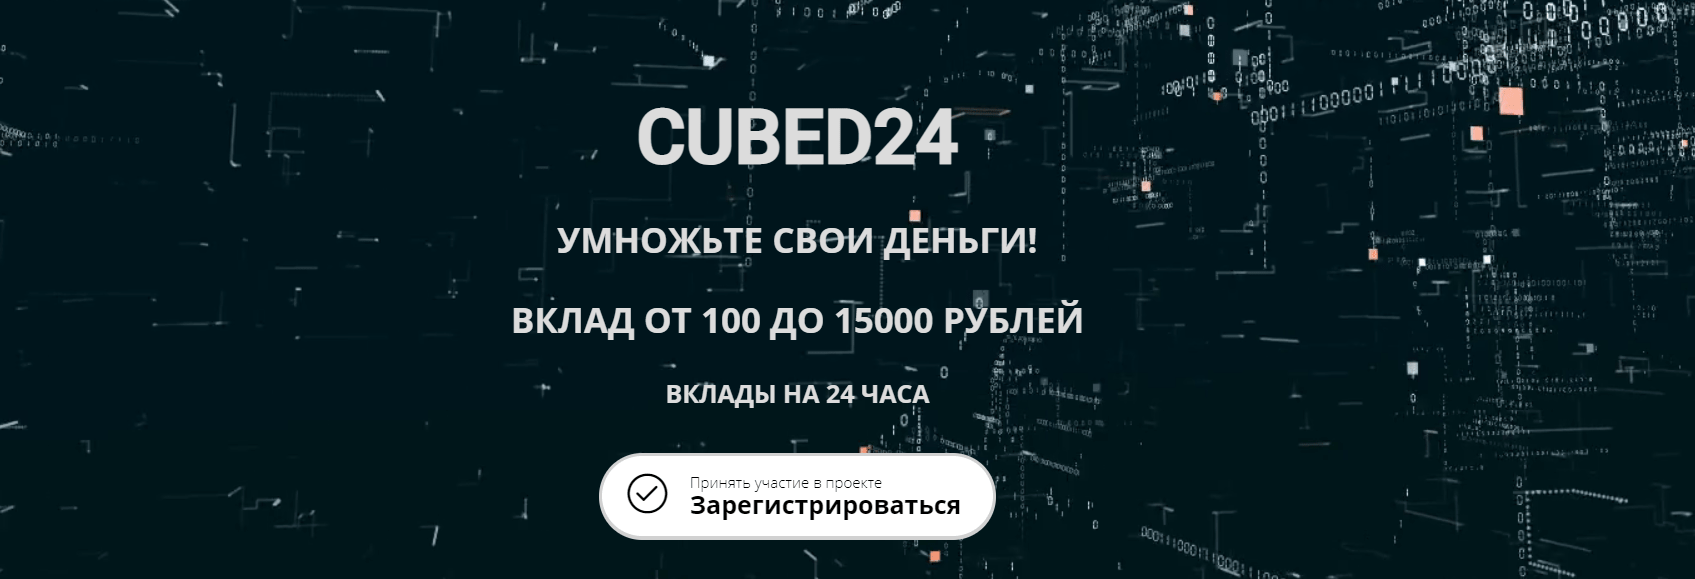 CUBED24 - вся правда о конторе, Фото № 1 - 1-consult.net